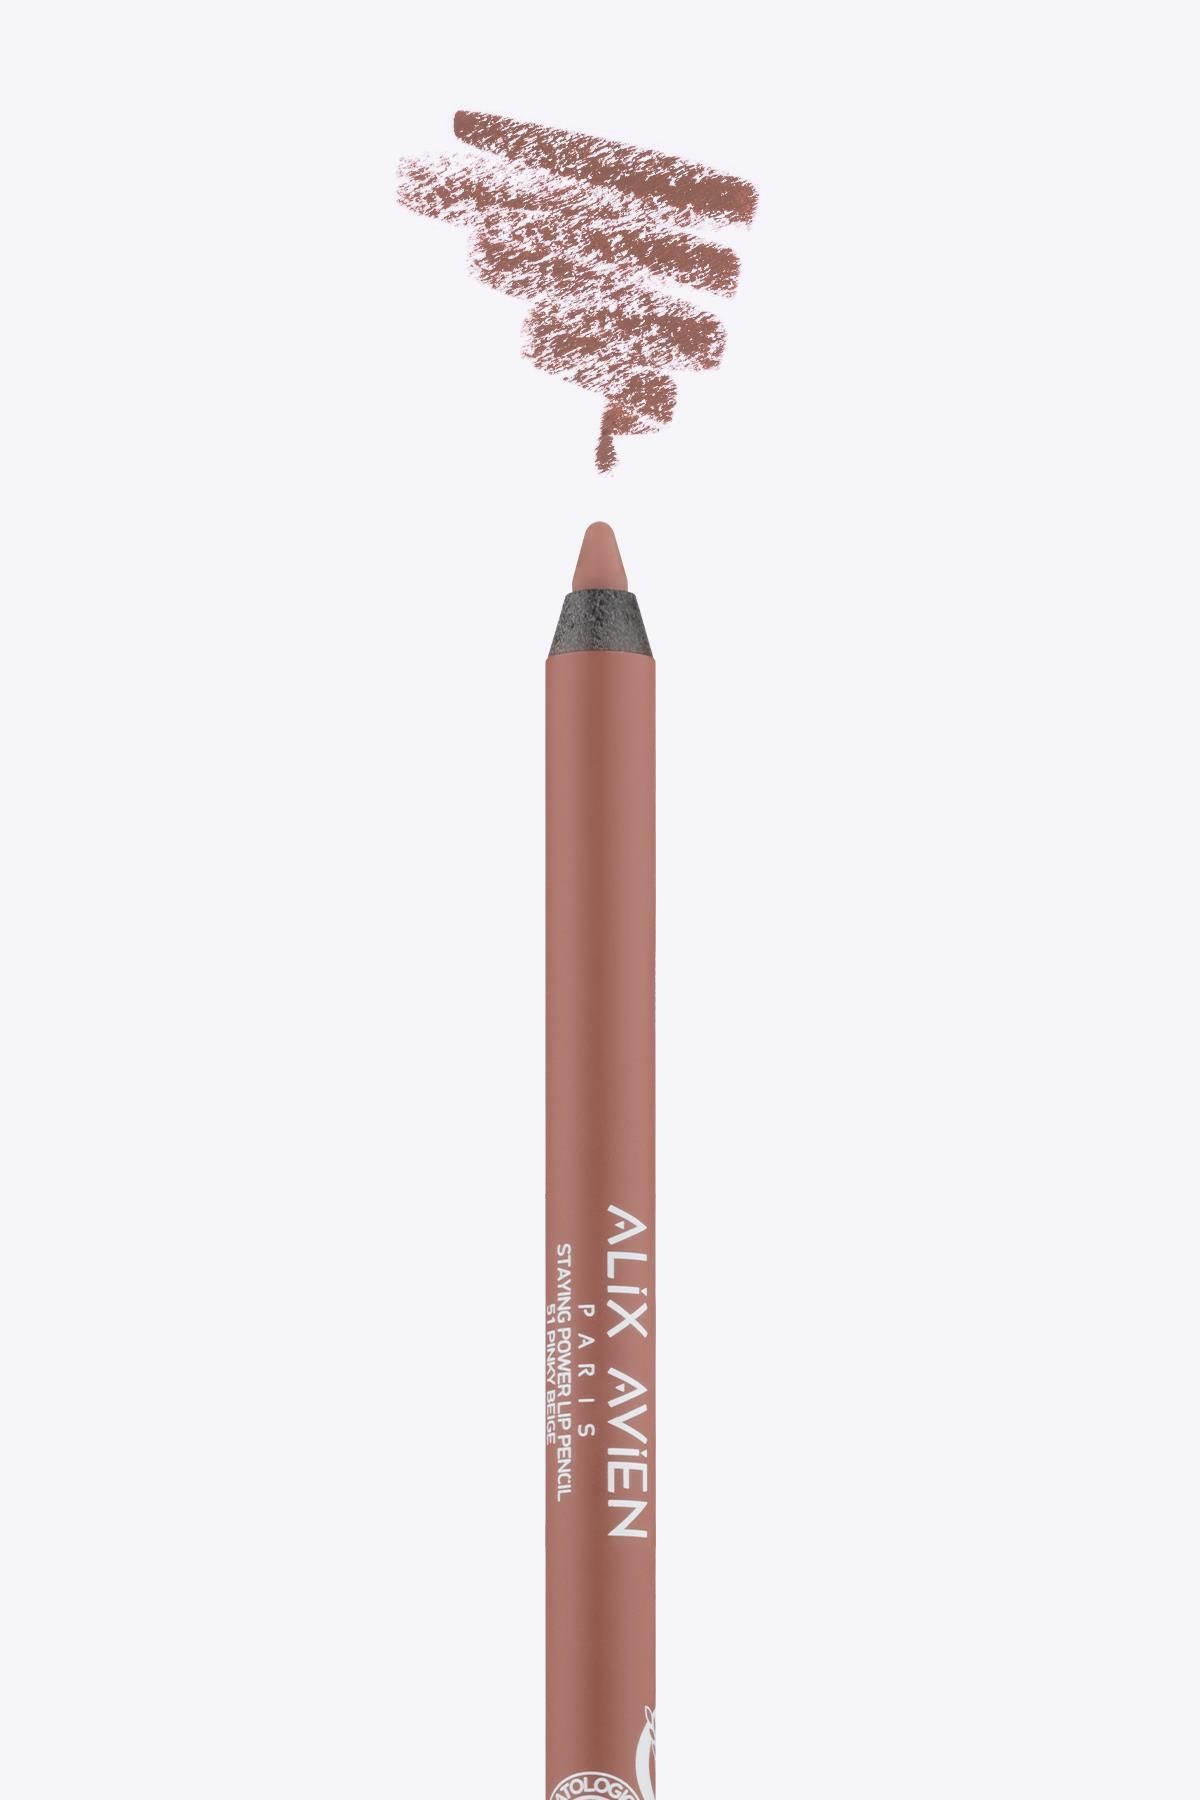 Alix Avien Uzun Süre Kalıcı Suya Dayanıklı Dudak Kalemi - Staying Power Lip Pencil 51 Pinky Beige